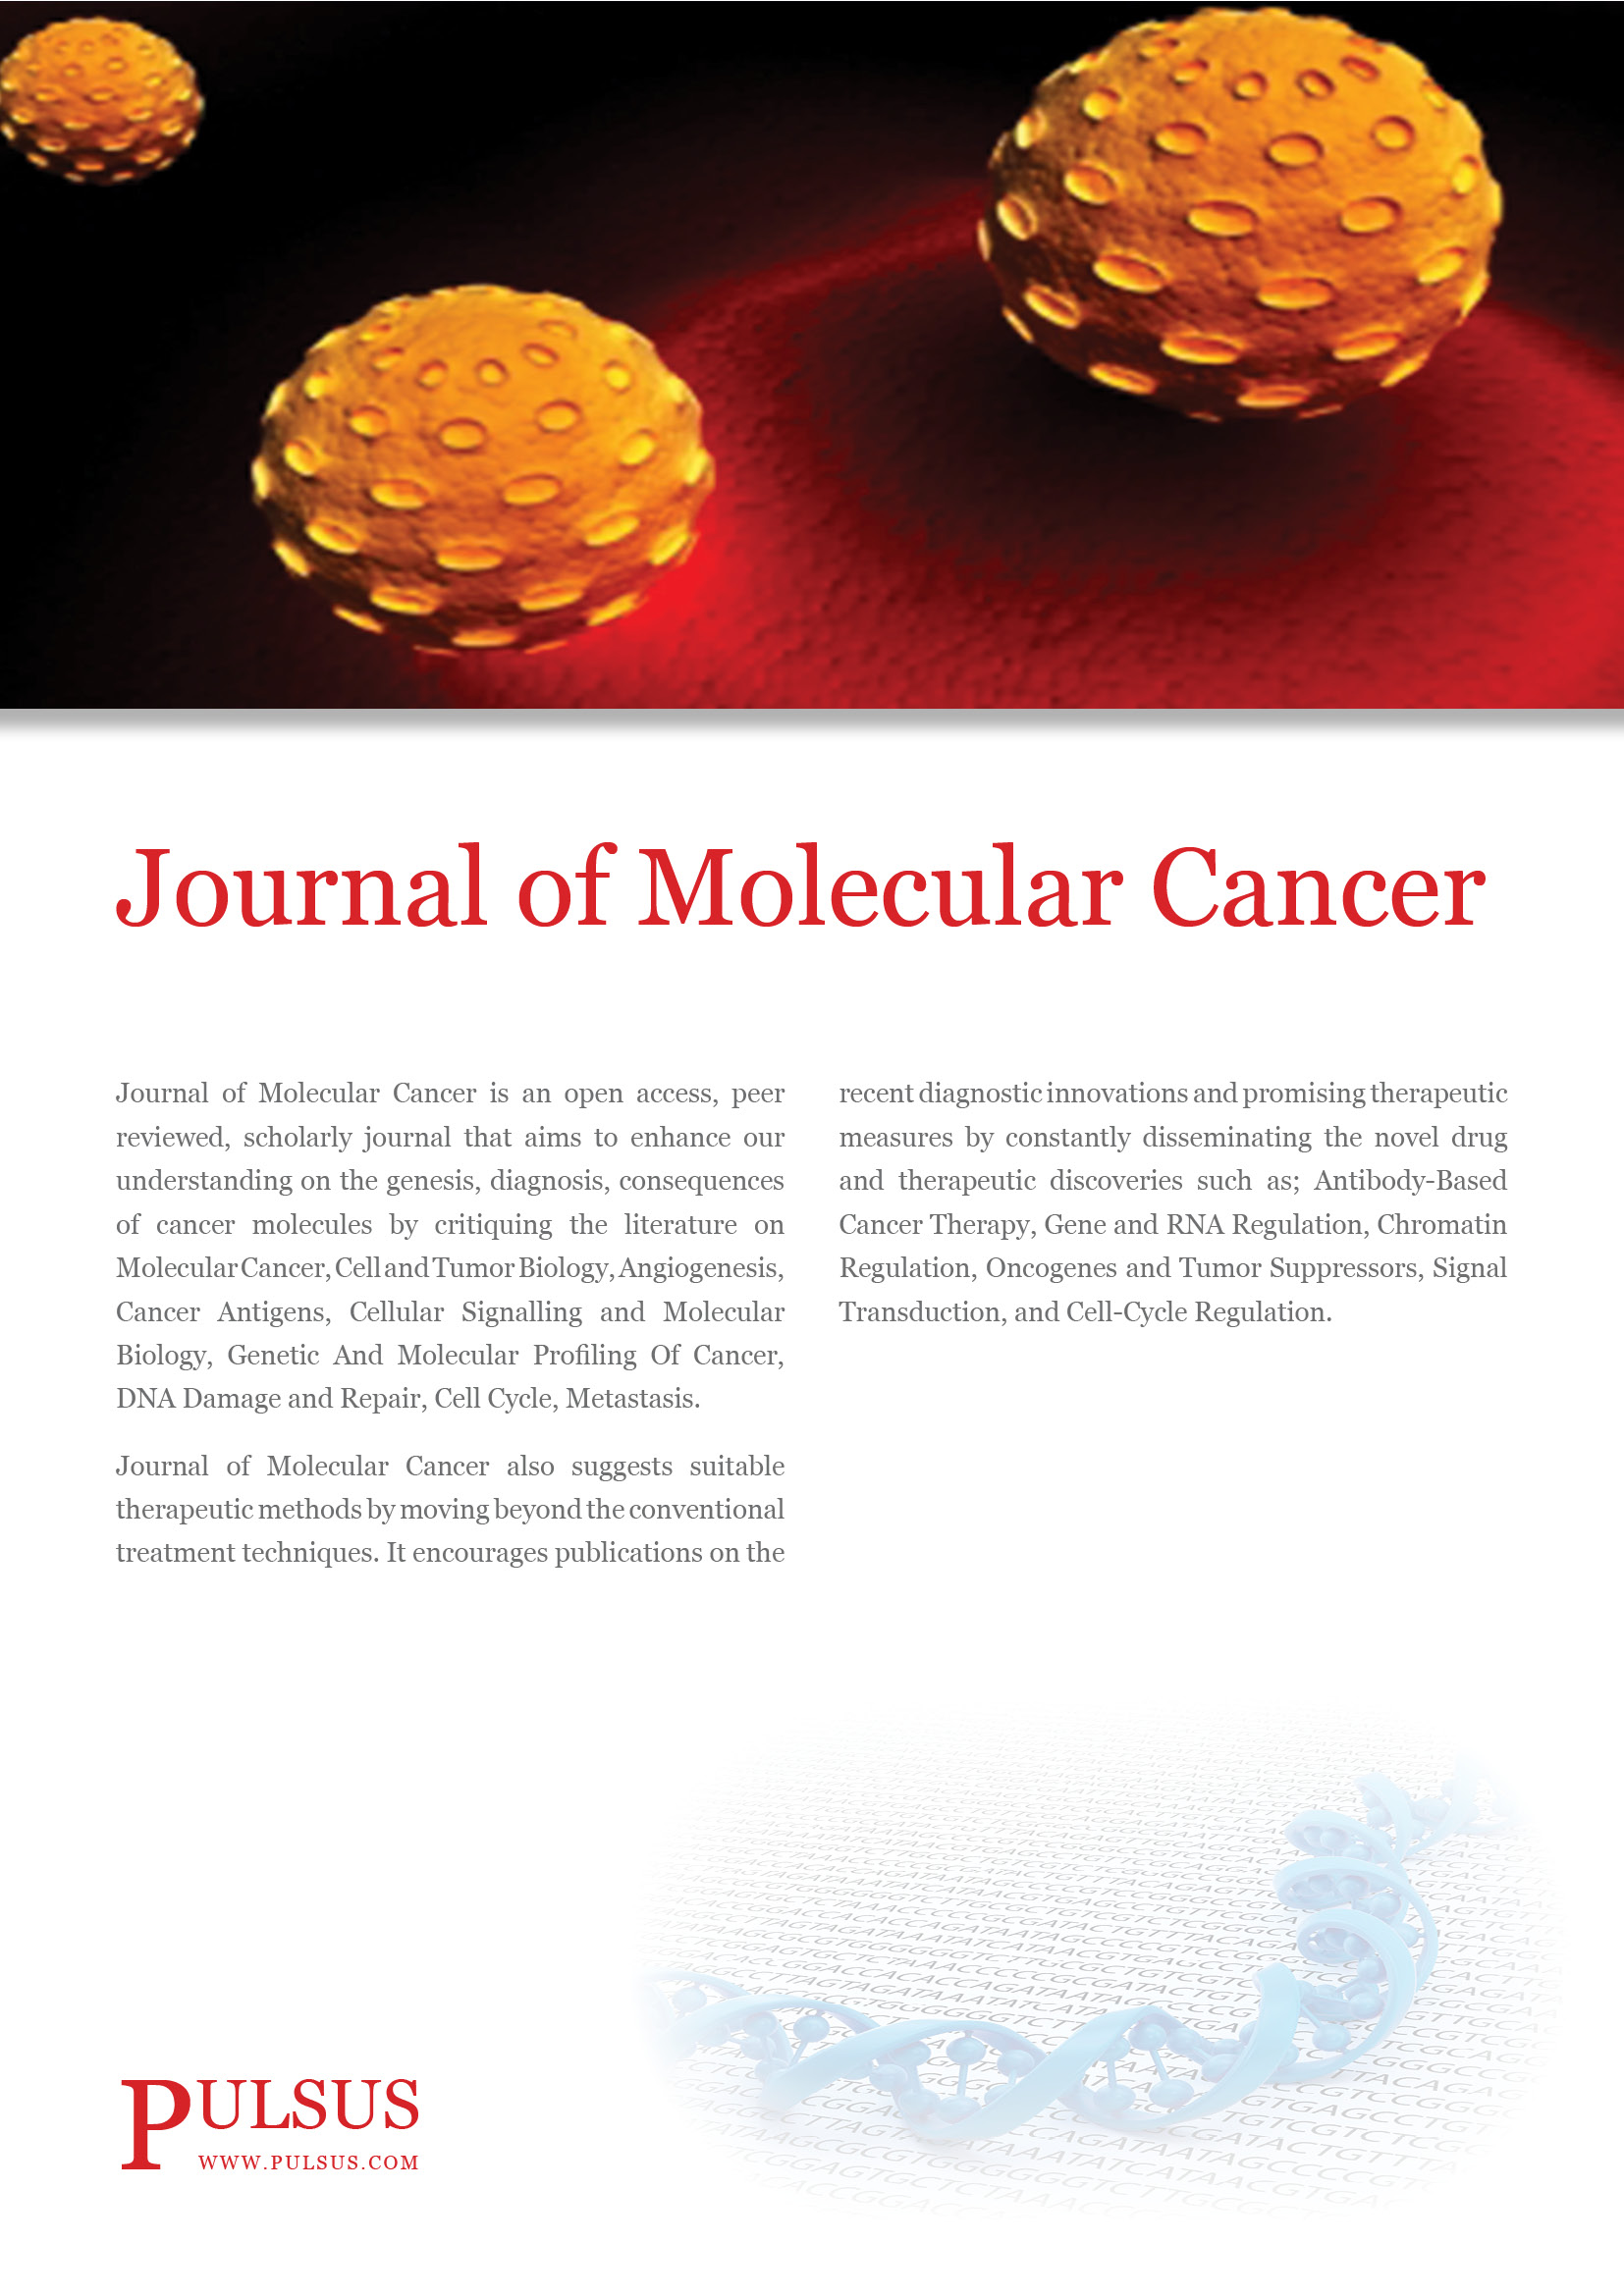 Revista de cáncer molecular